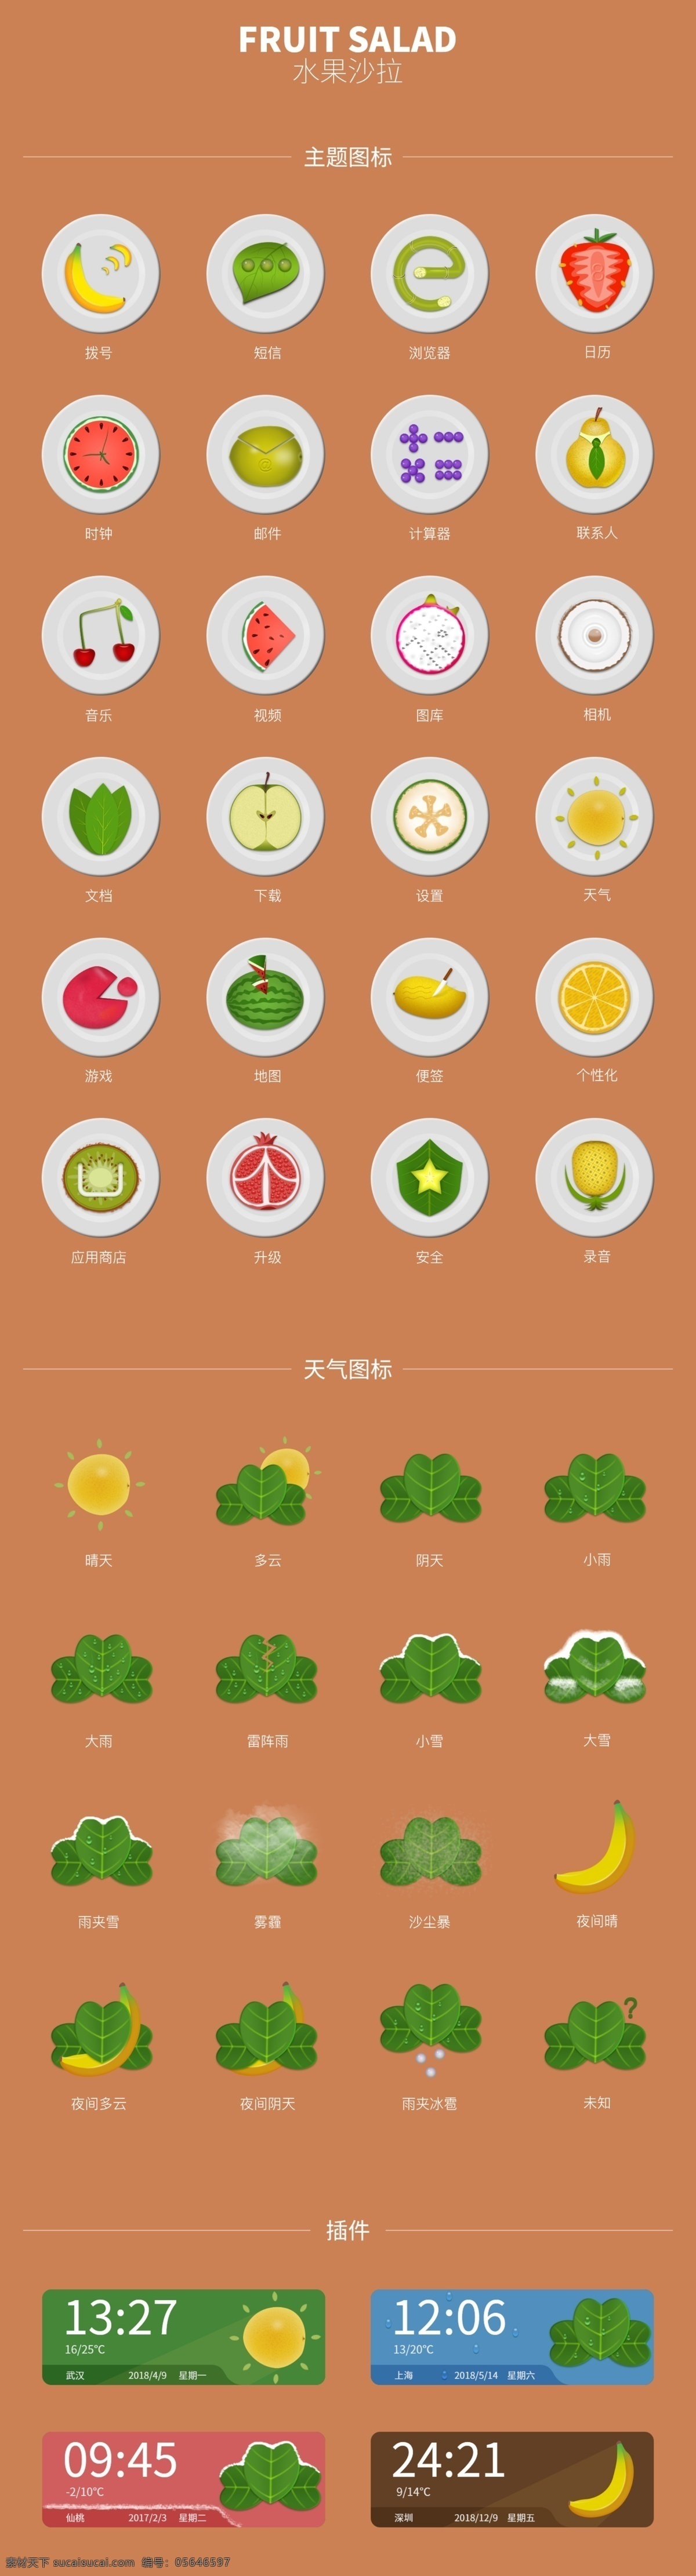 水果 沙拉 图标 手机主题 水果沙拉 icon 写实图标 水果图标